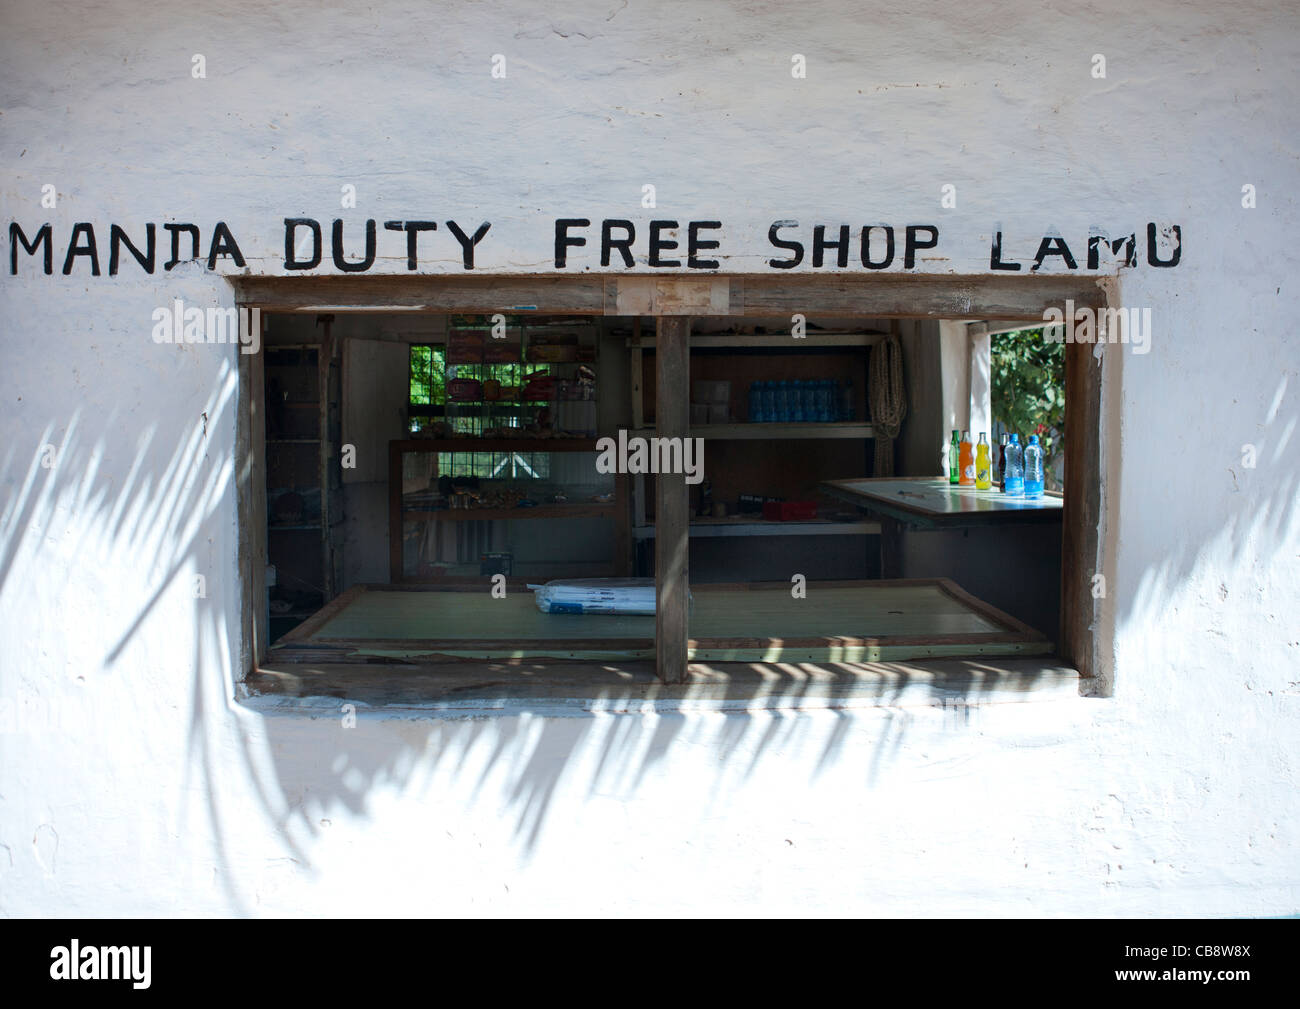 Duty Free Shop am Flughafen Manda, Lamu, Kenia Stockfoto